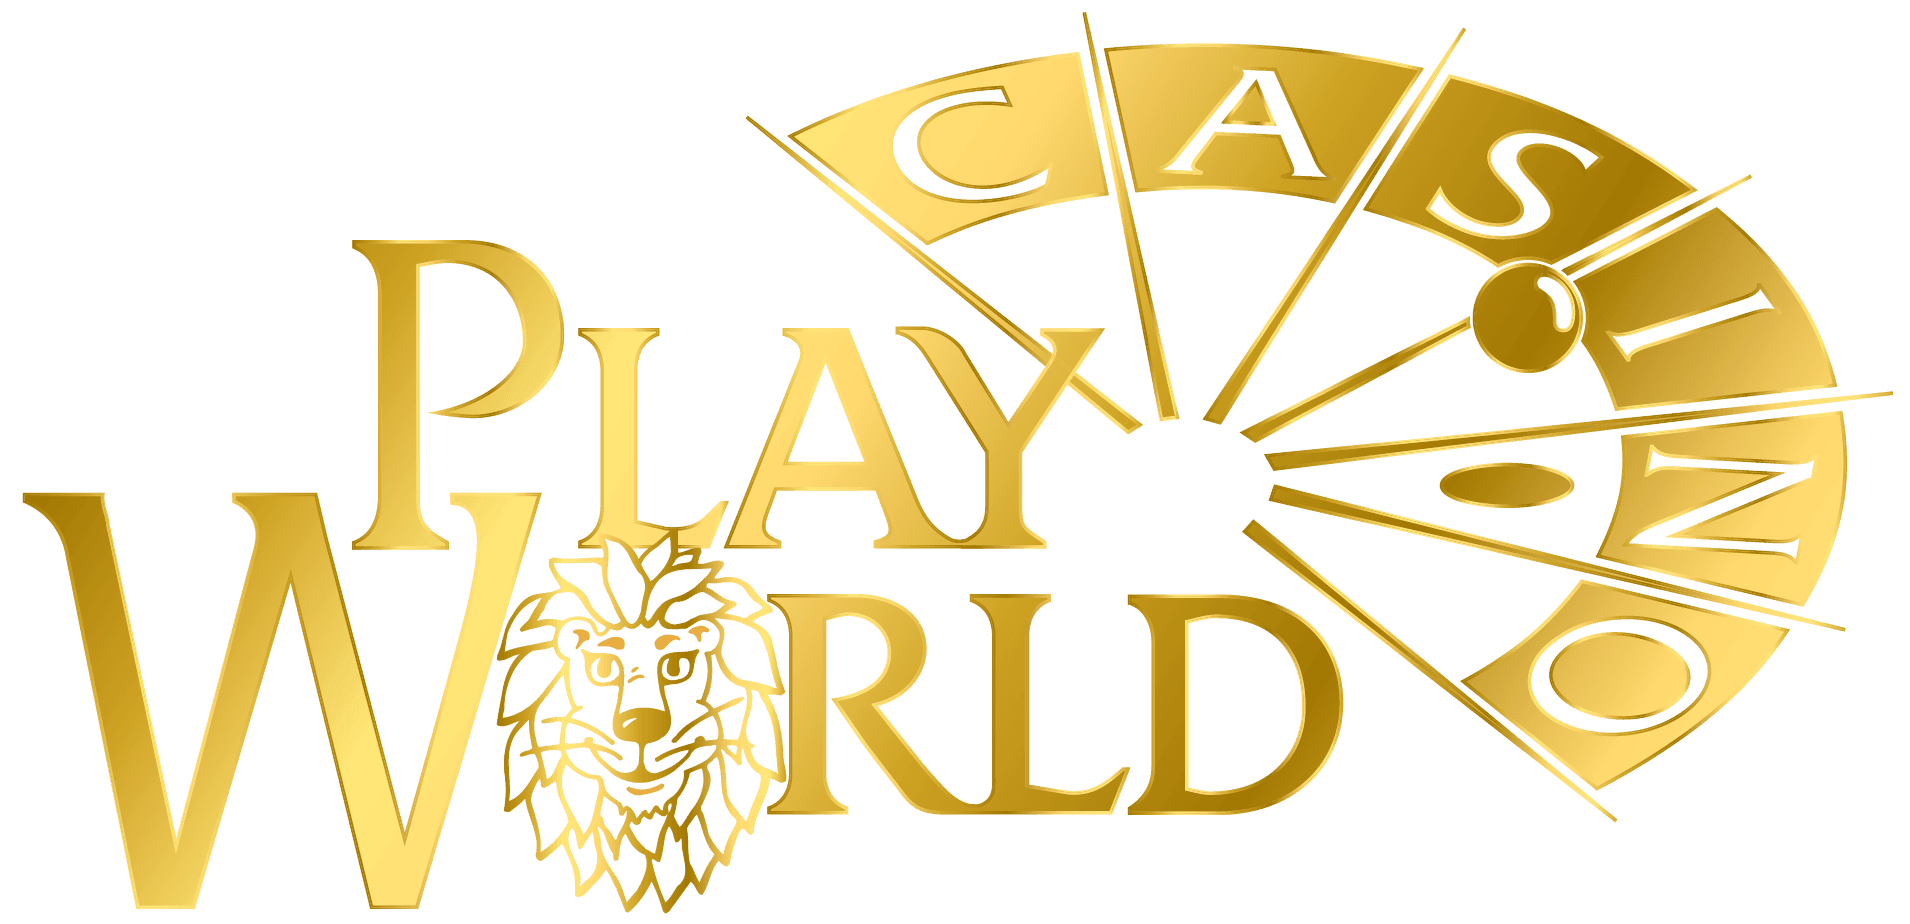 Play n Go logo casino